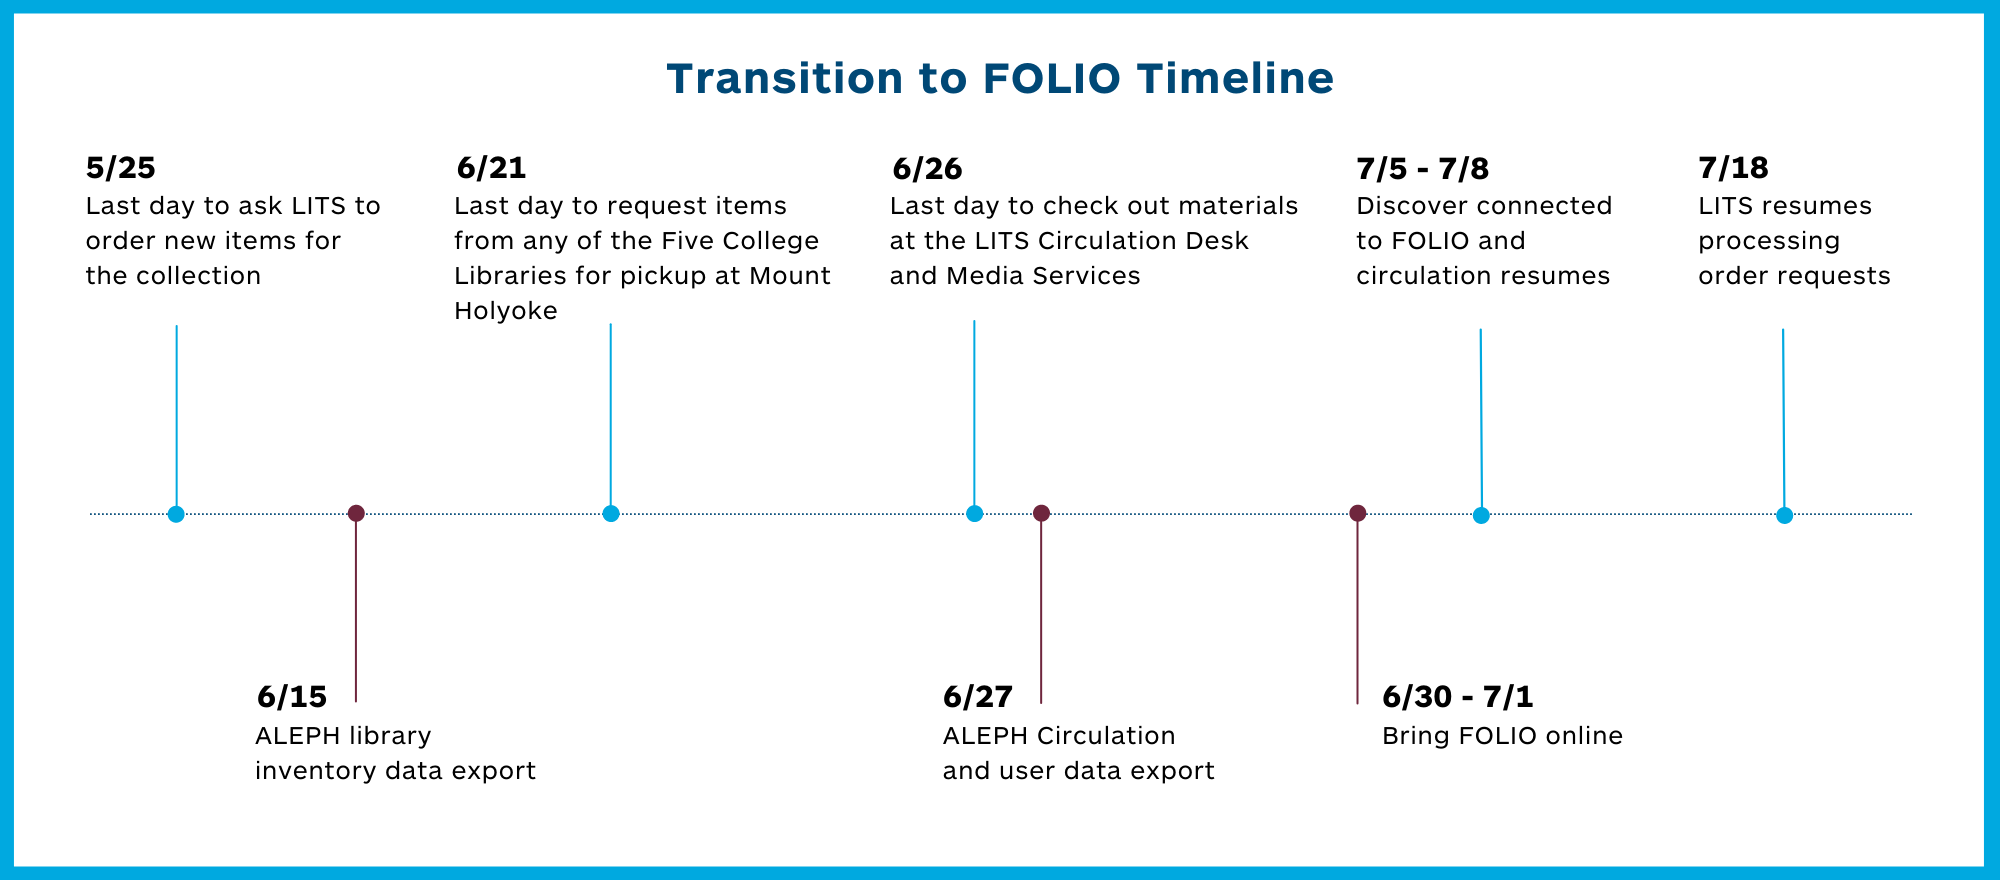 Timeline for FOLIO Implementation